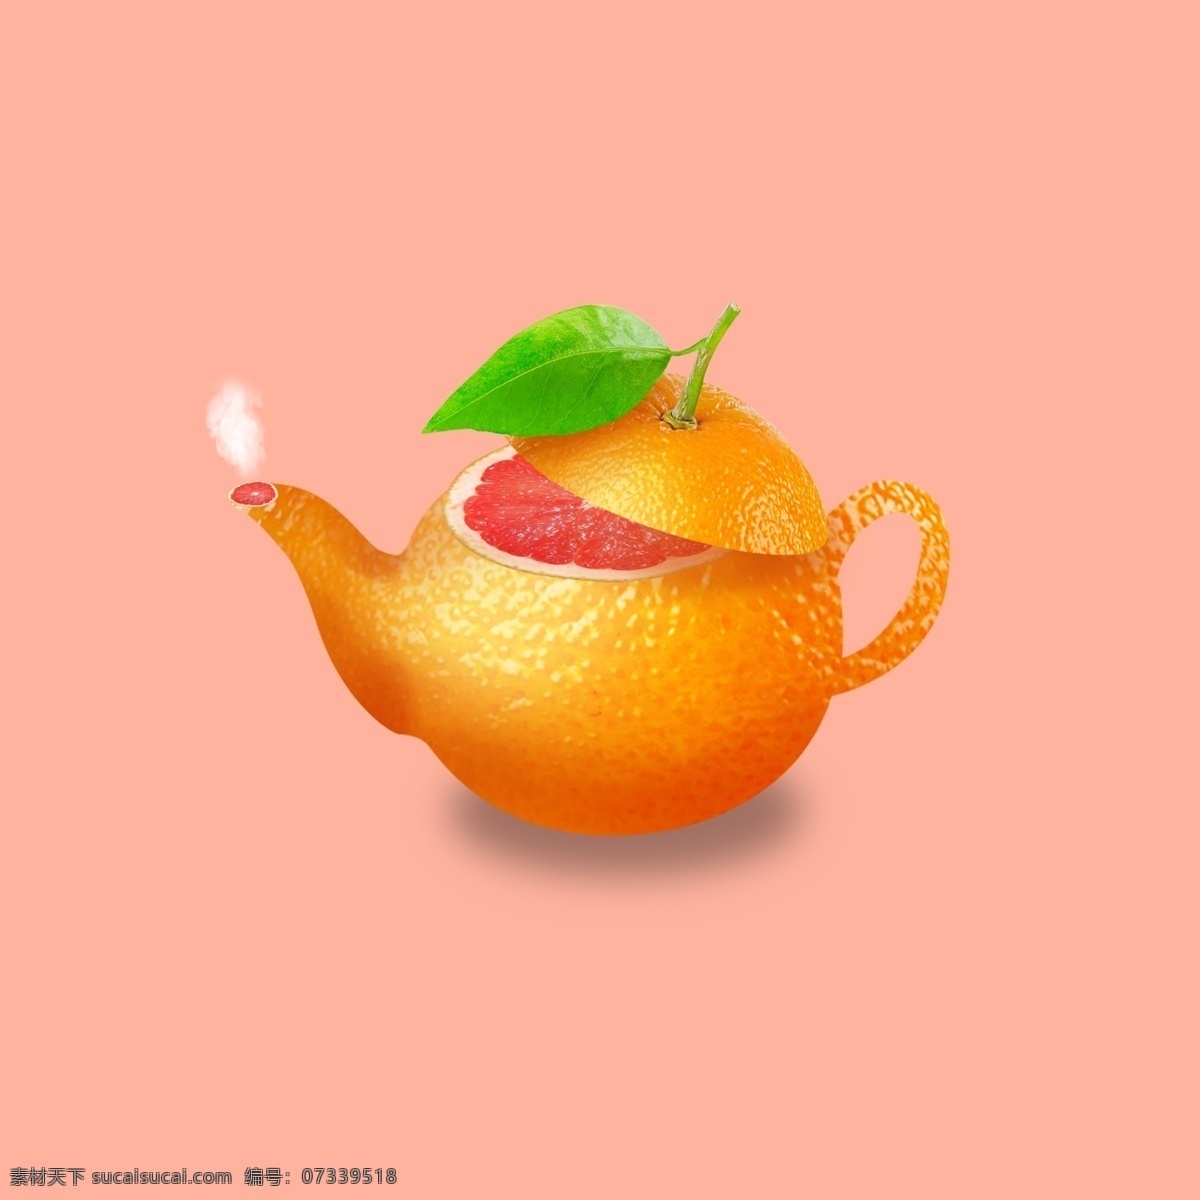 创意茶壶 合成 橙子茶壶 餐饮 创意 生活百科 餐饮美食